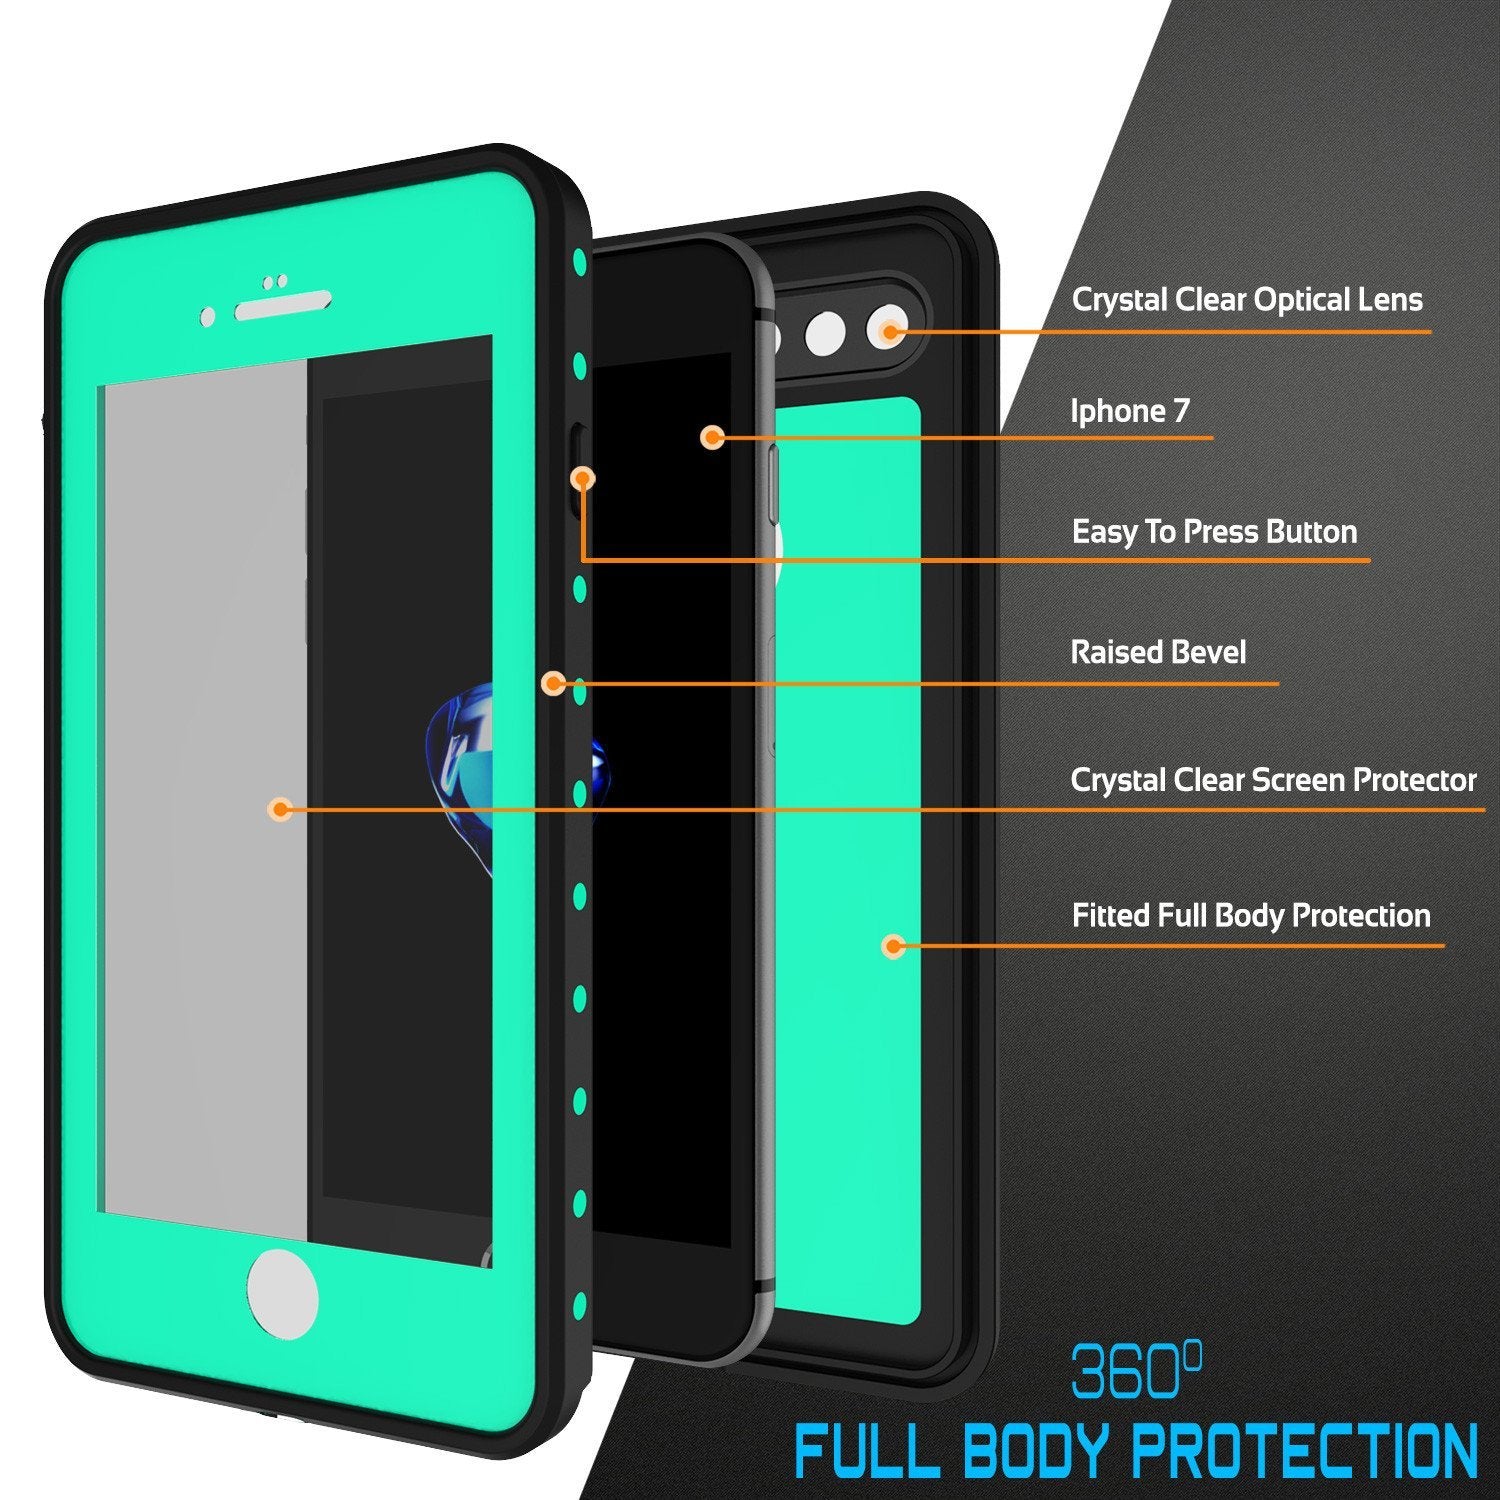 iPhone 8+ Plus Waterproof Case, Punkcase [StudStar Series] [Teal]